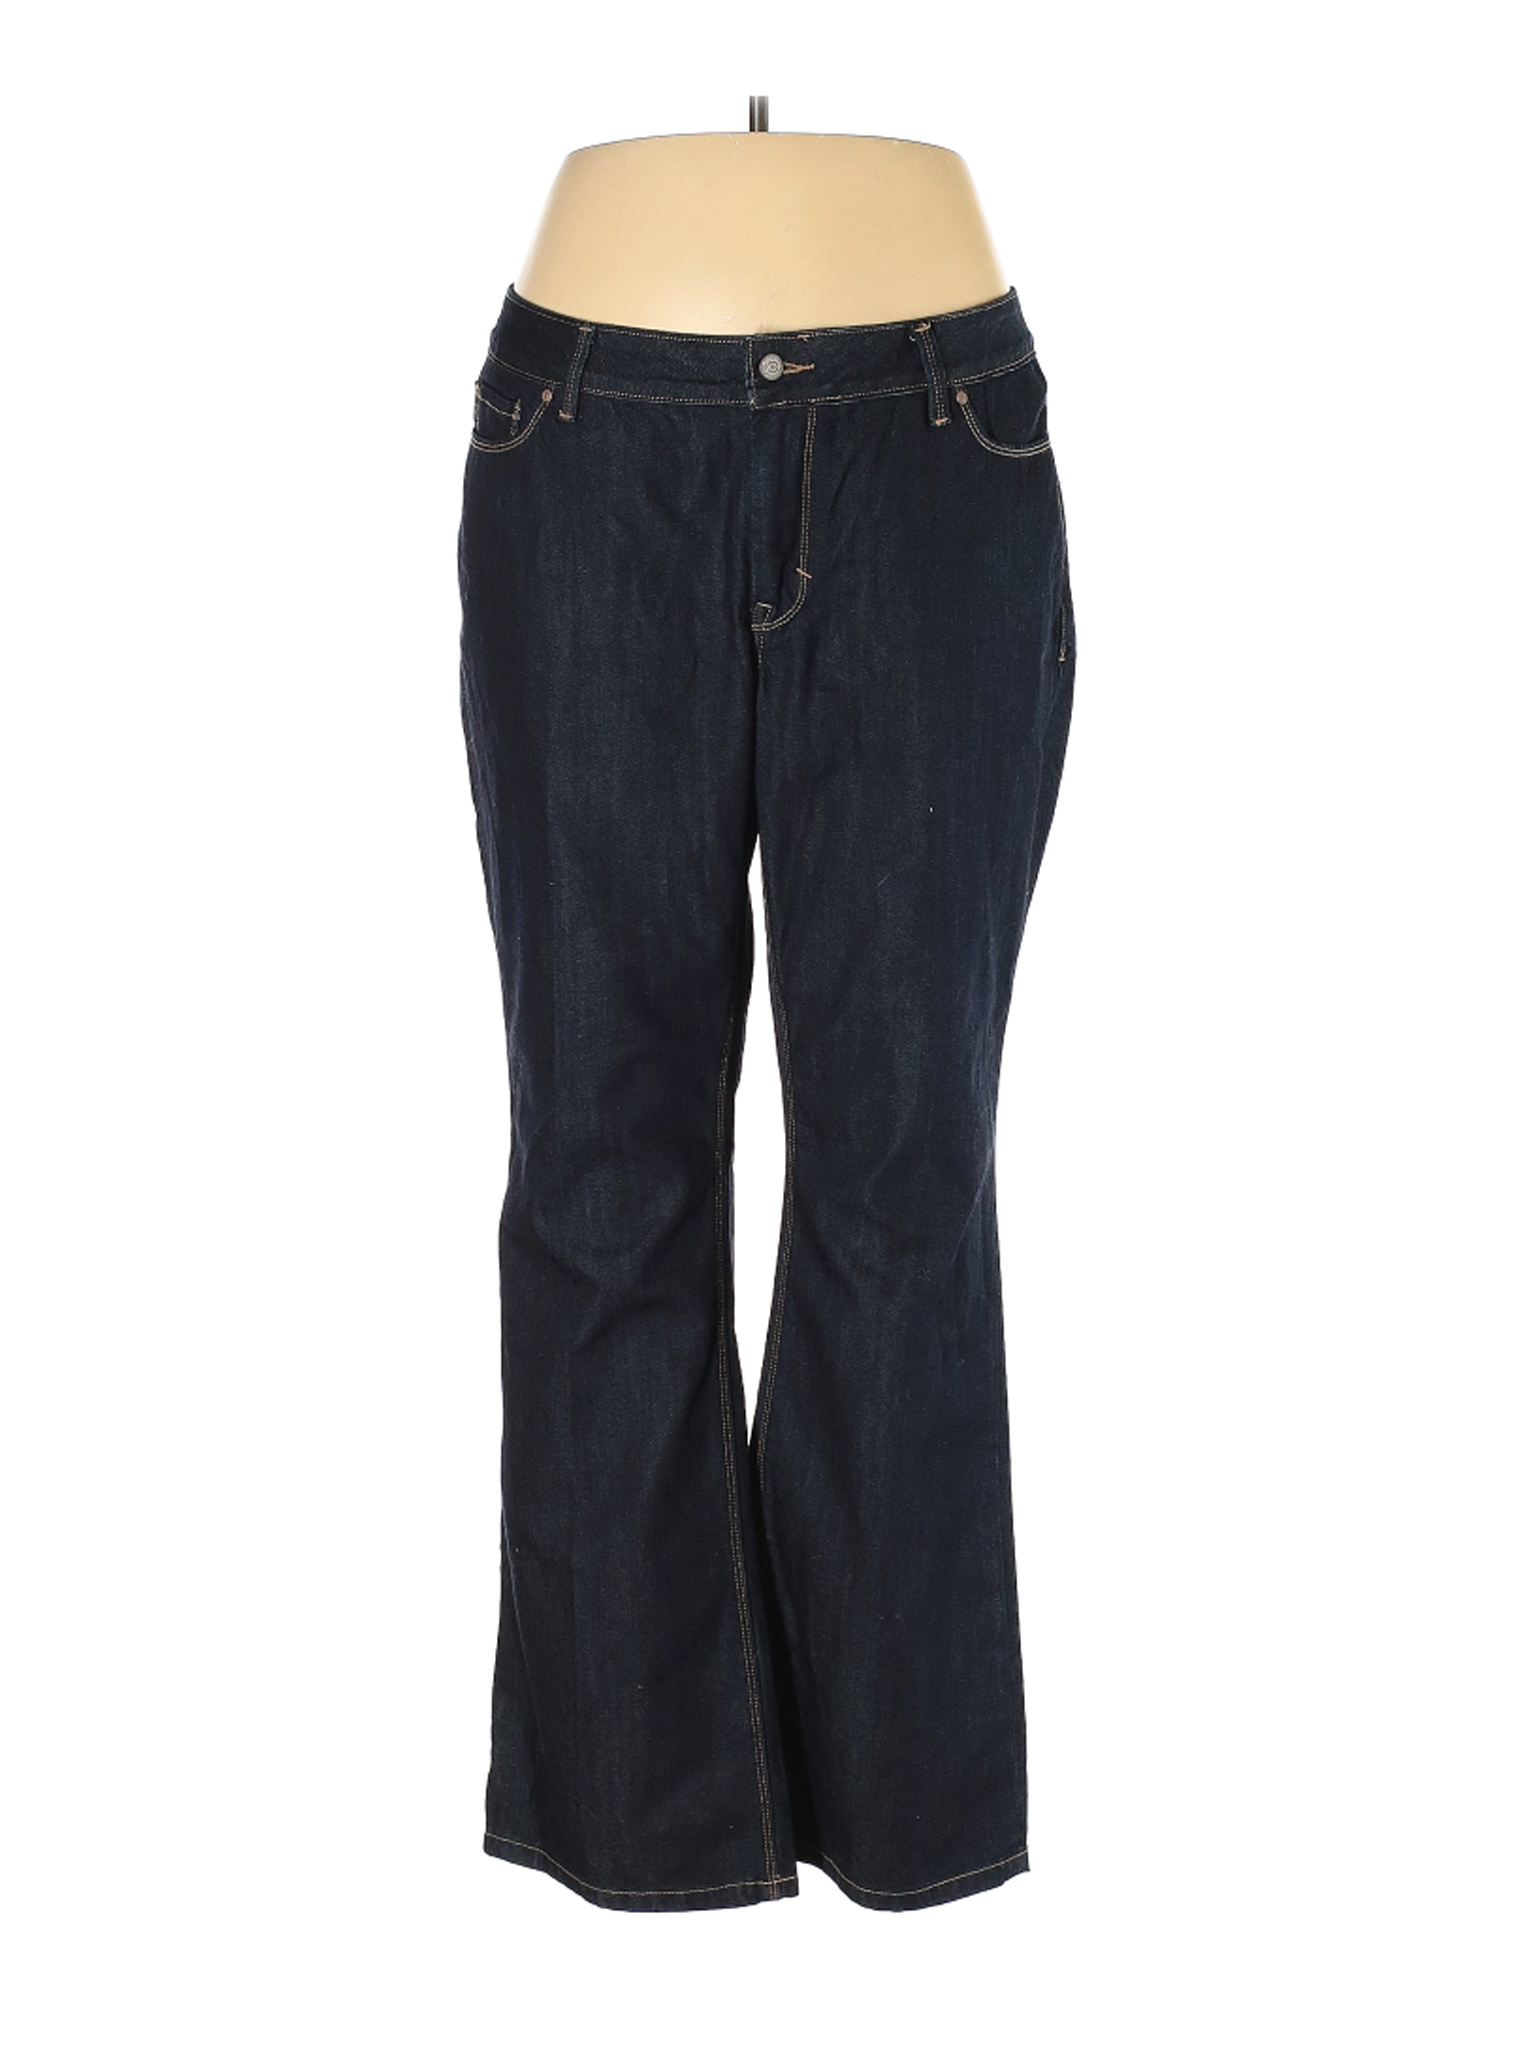 Old Navy Women Black Jeans 18 Plus | eBay